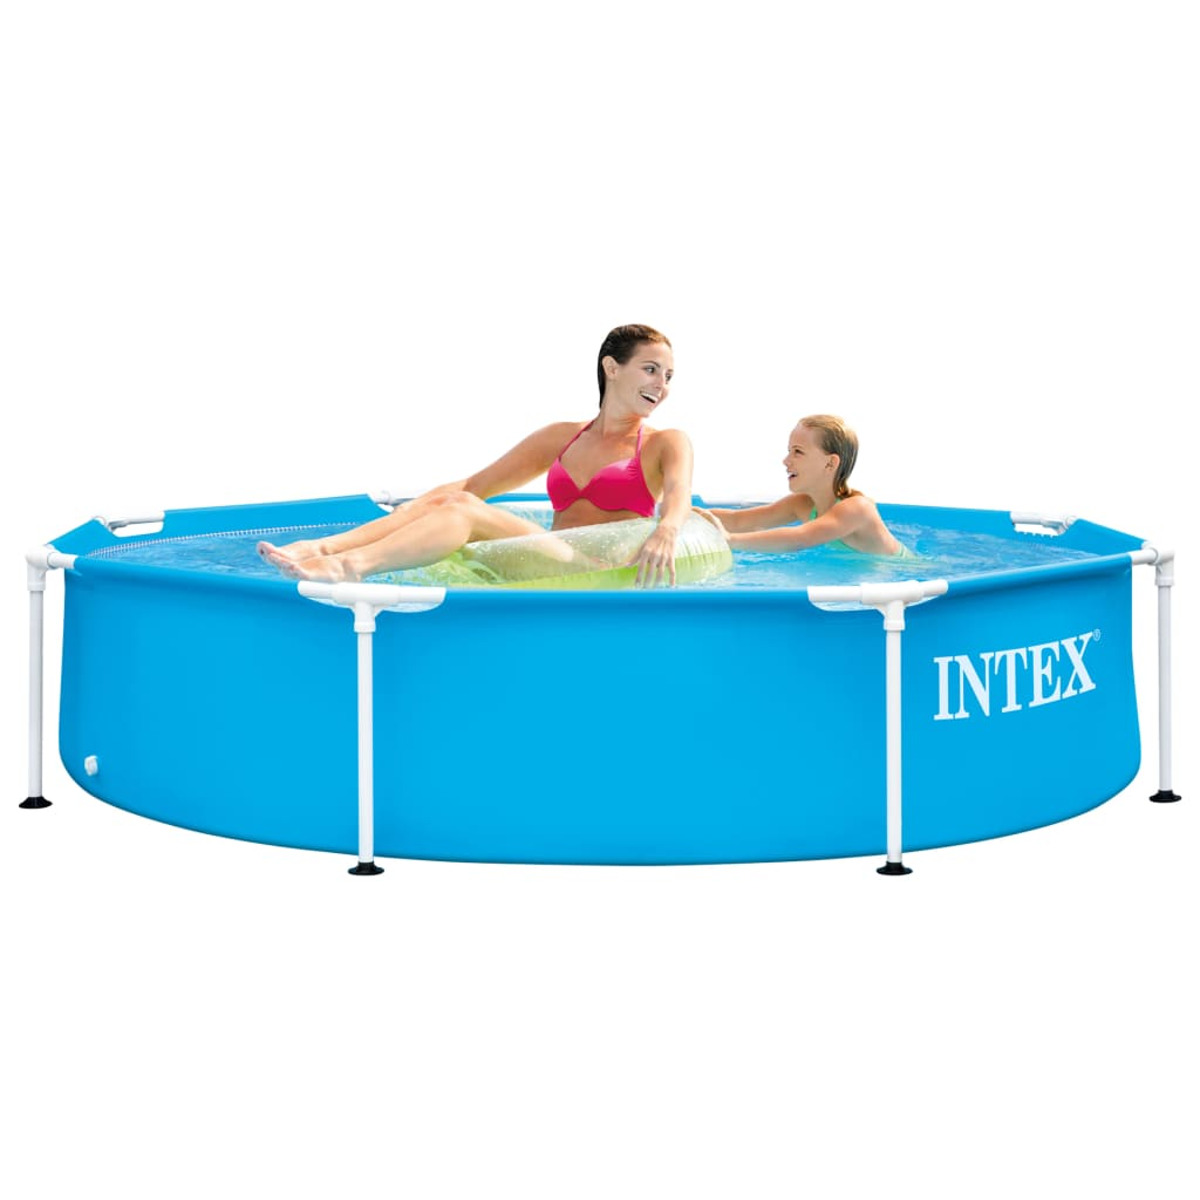 INTEX 3202884 Pool, Blau